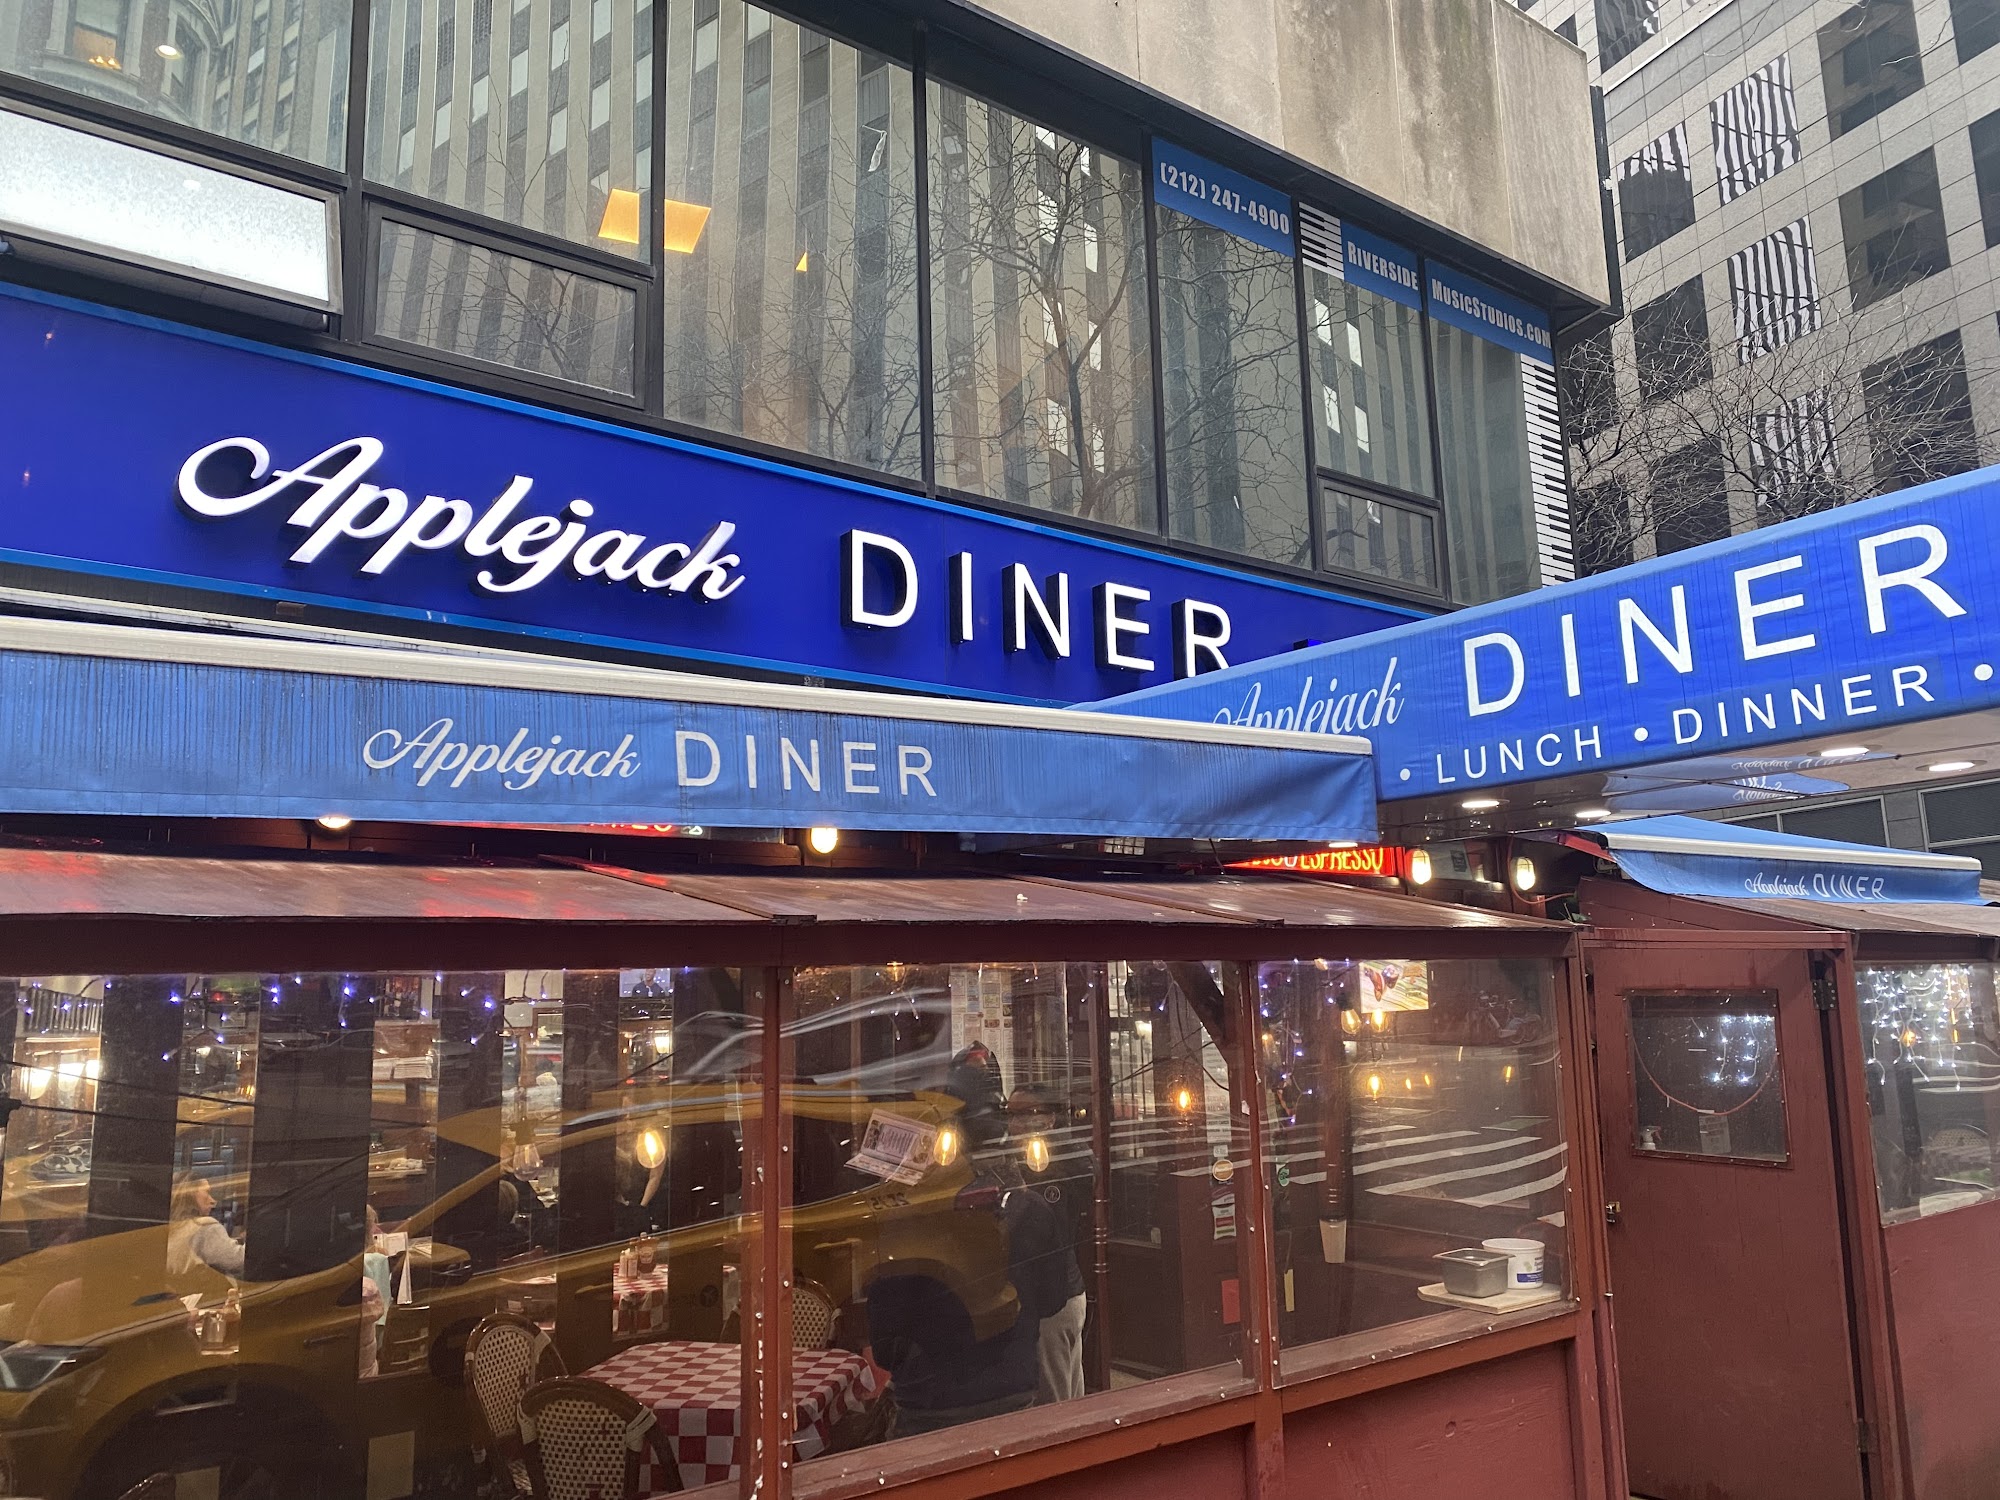 Applejack Diner